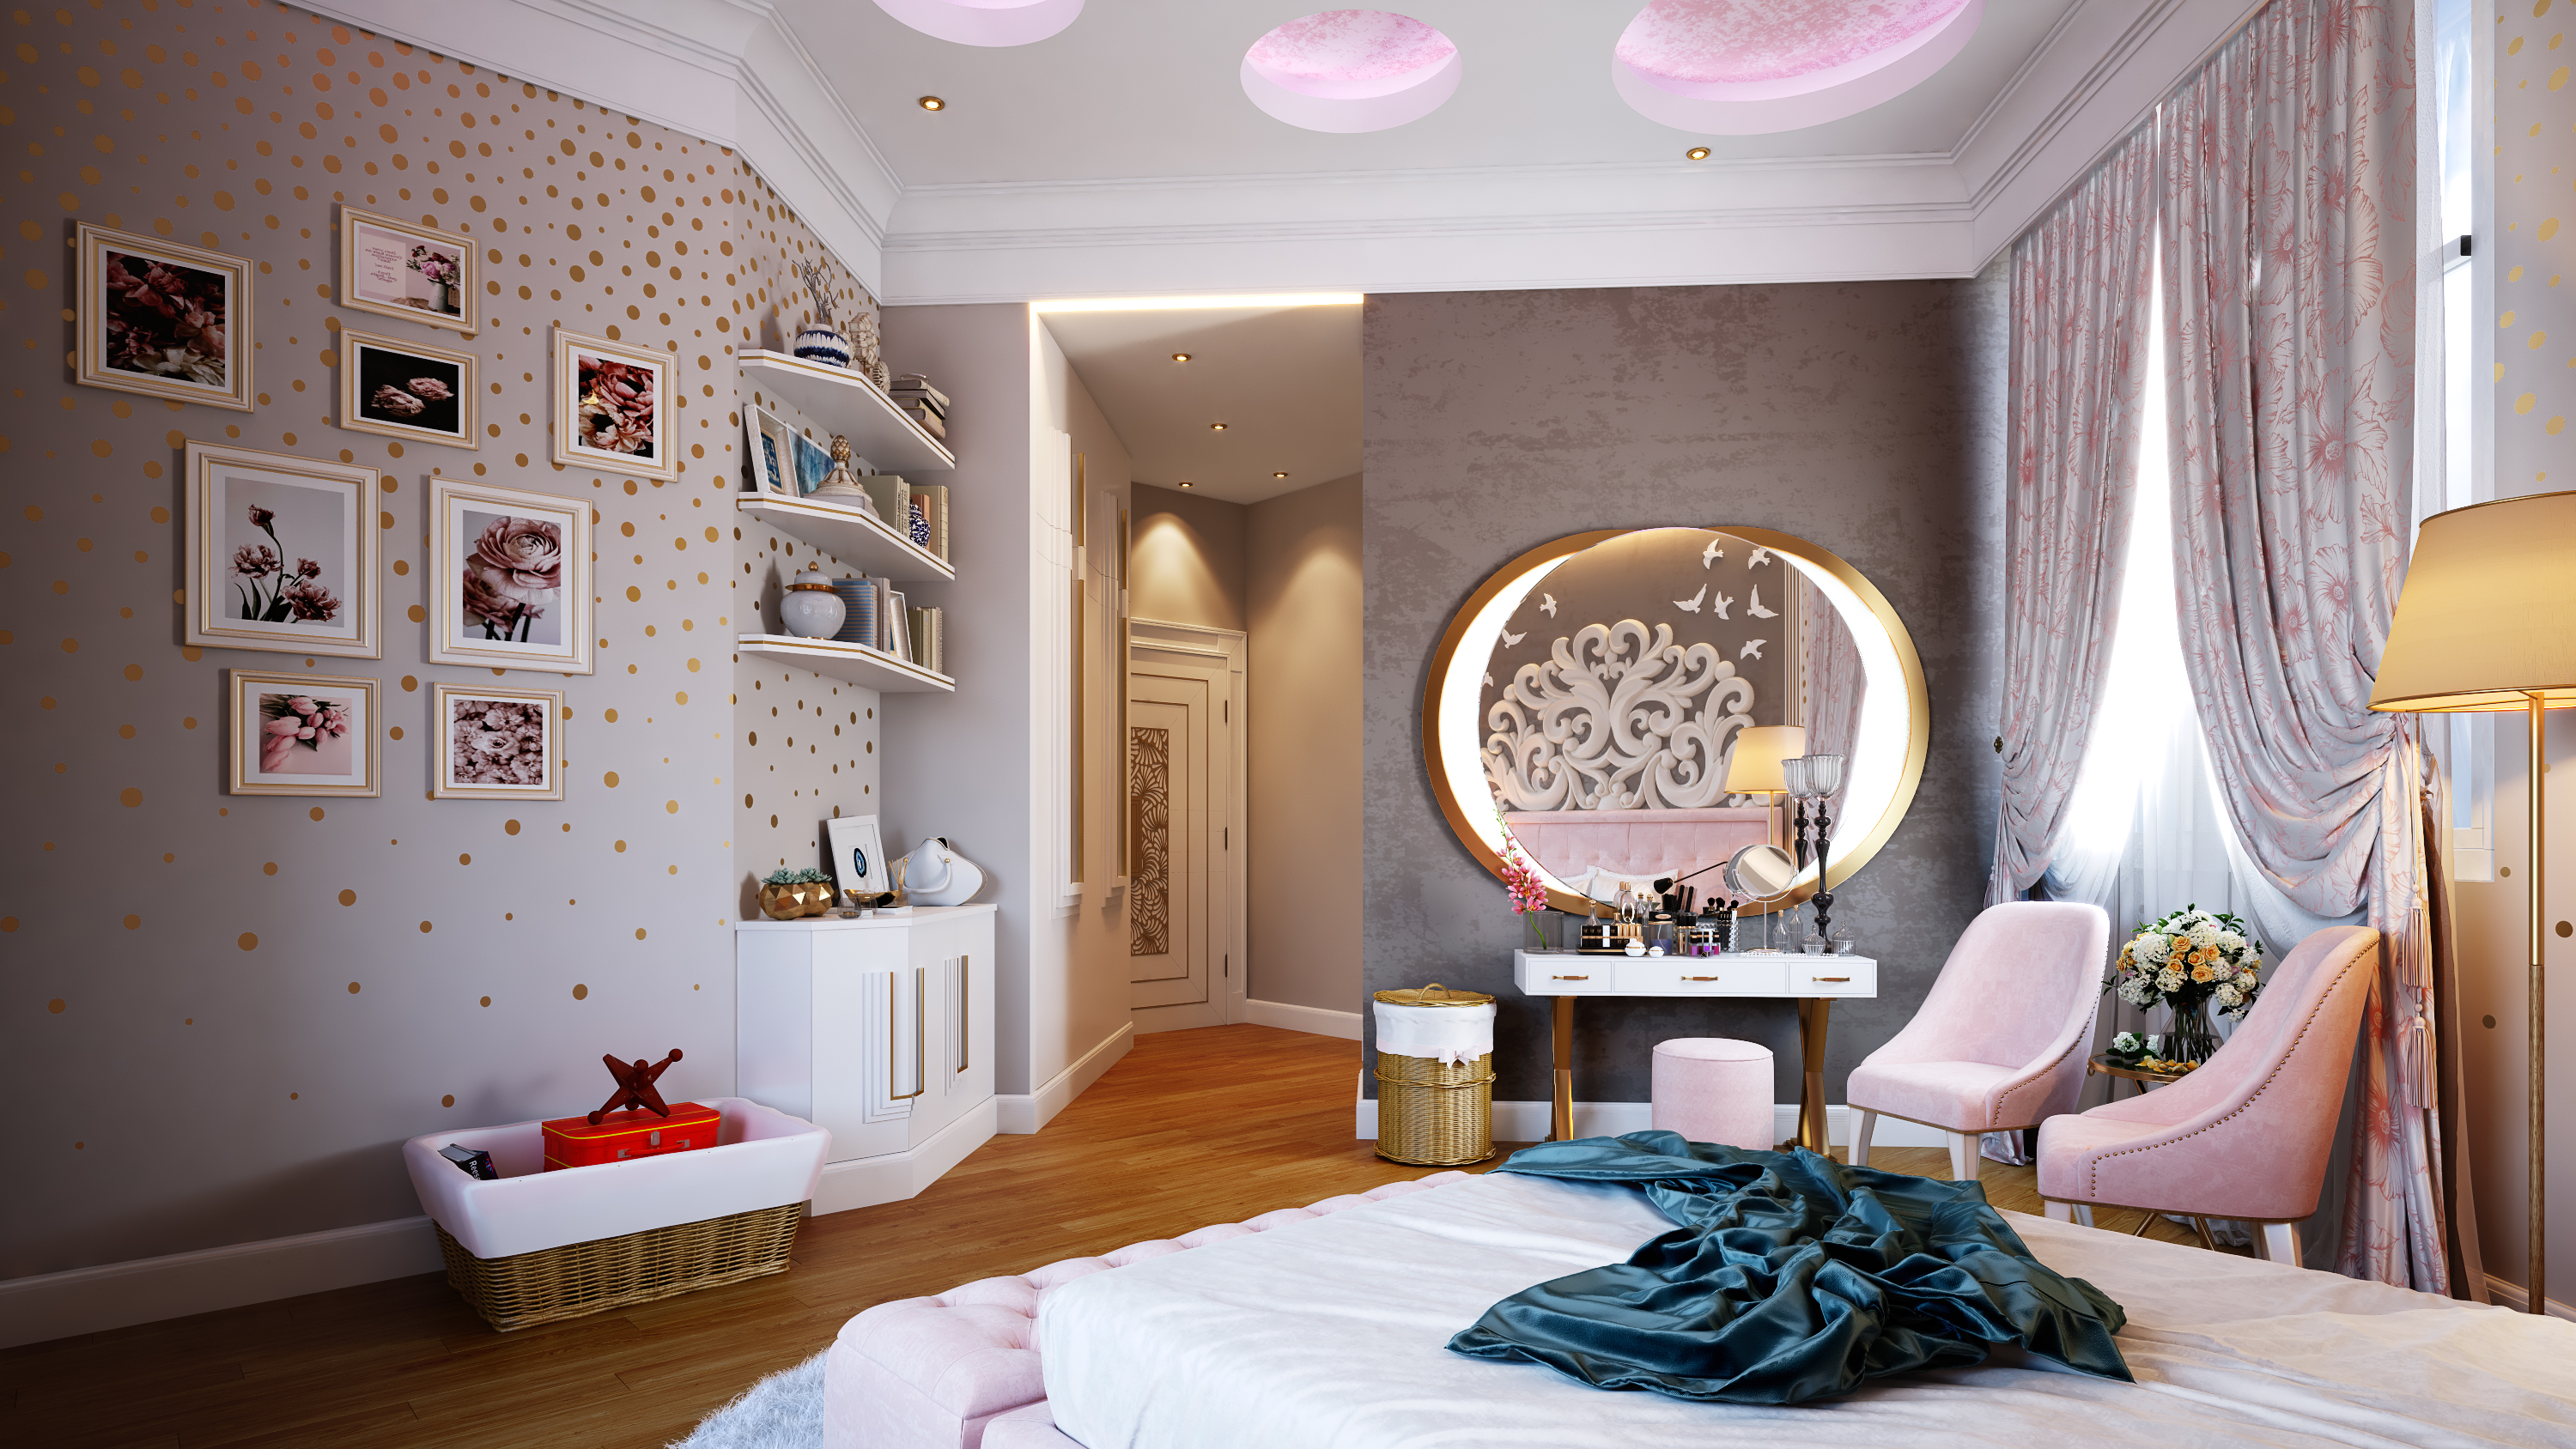 Teen Girls bedroom in 3d max vray 3.0 image